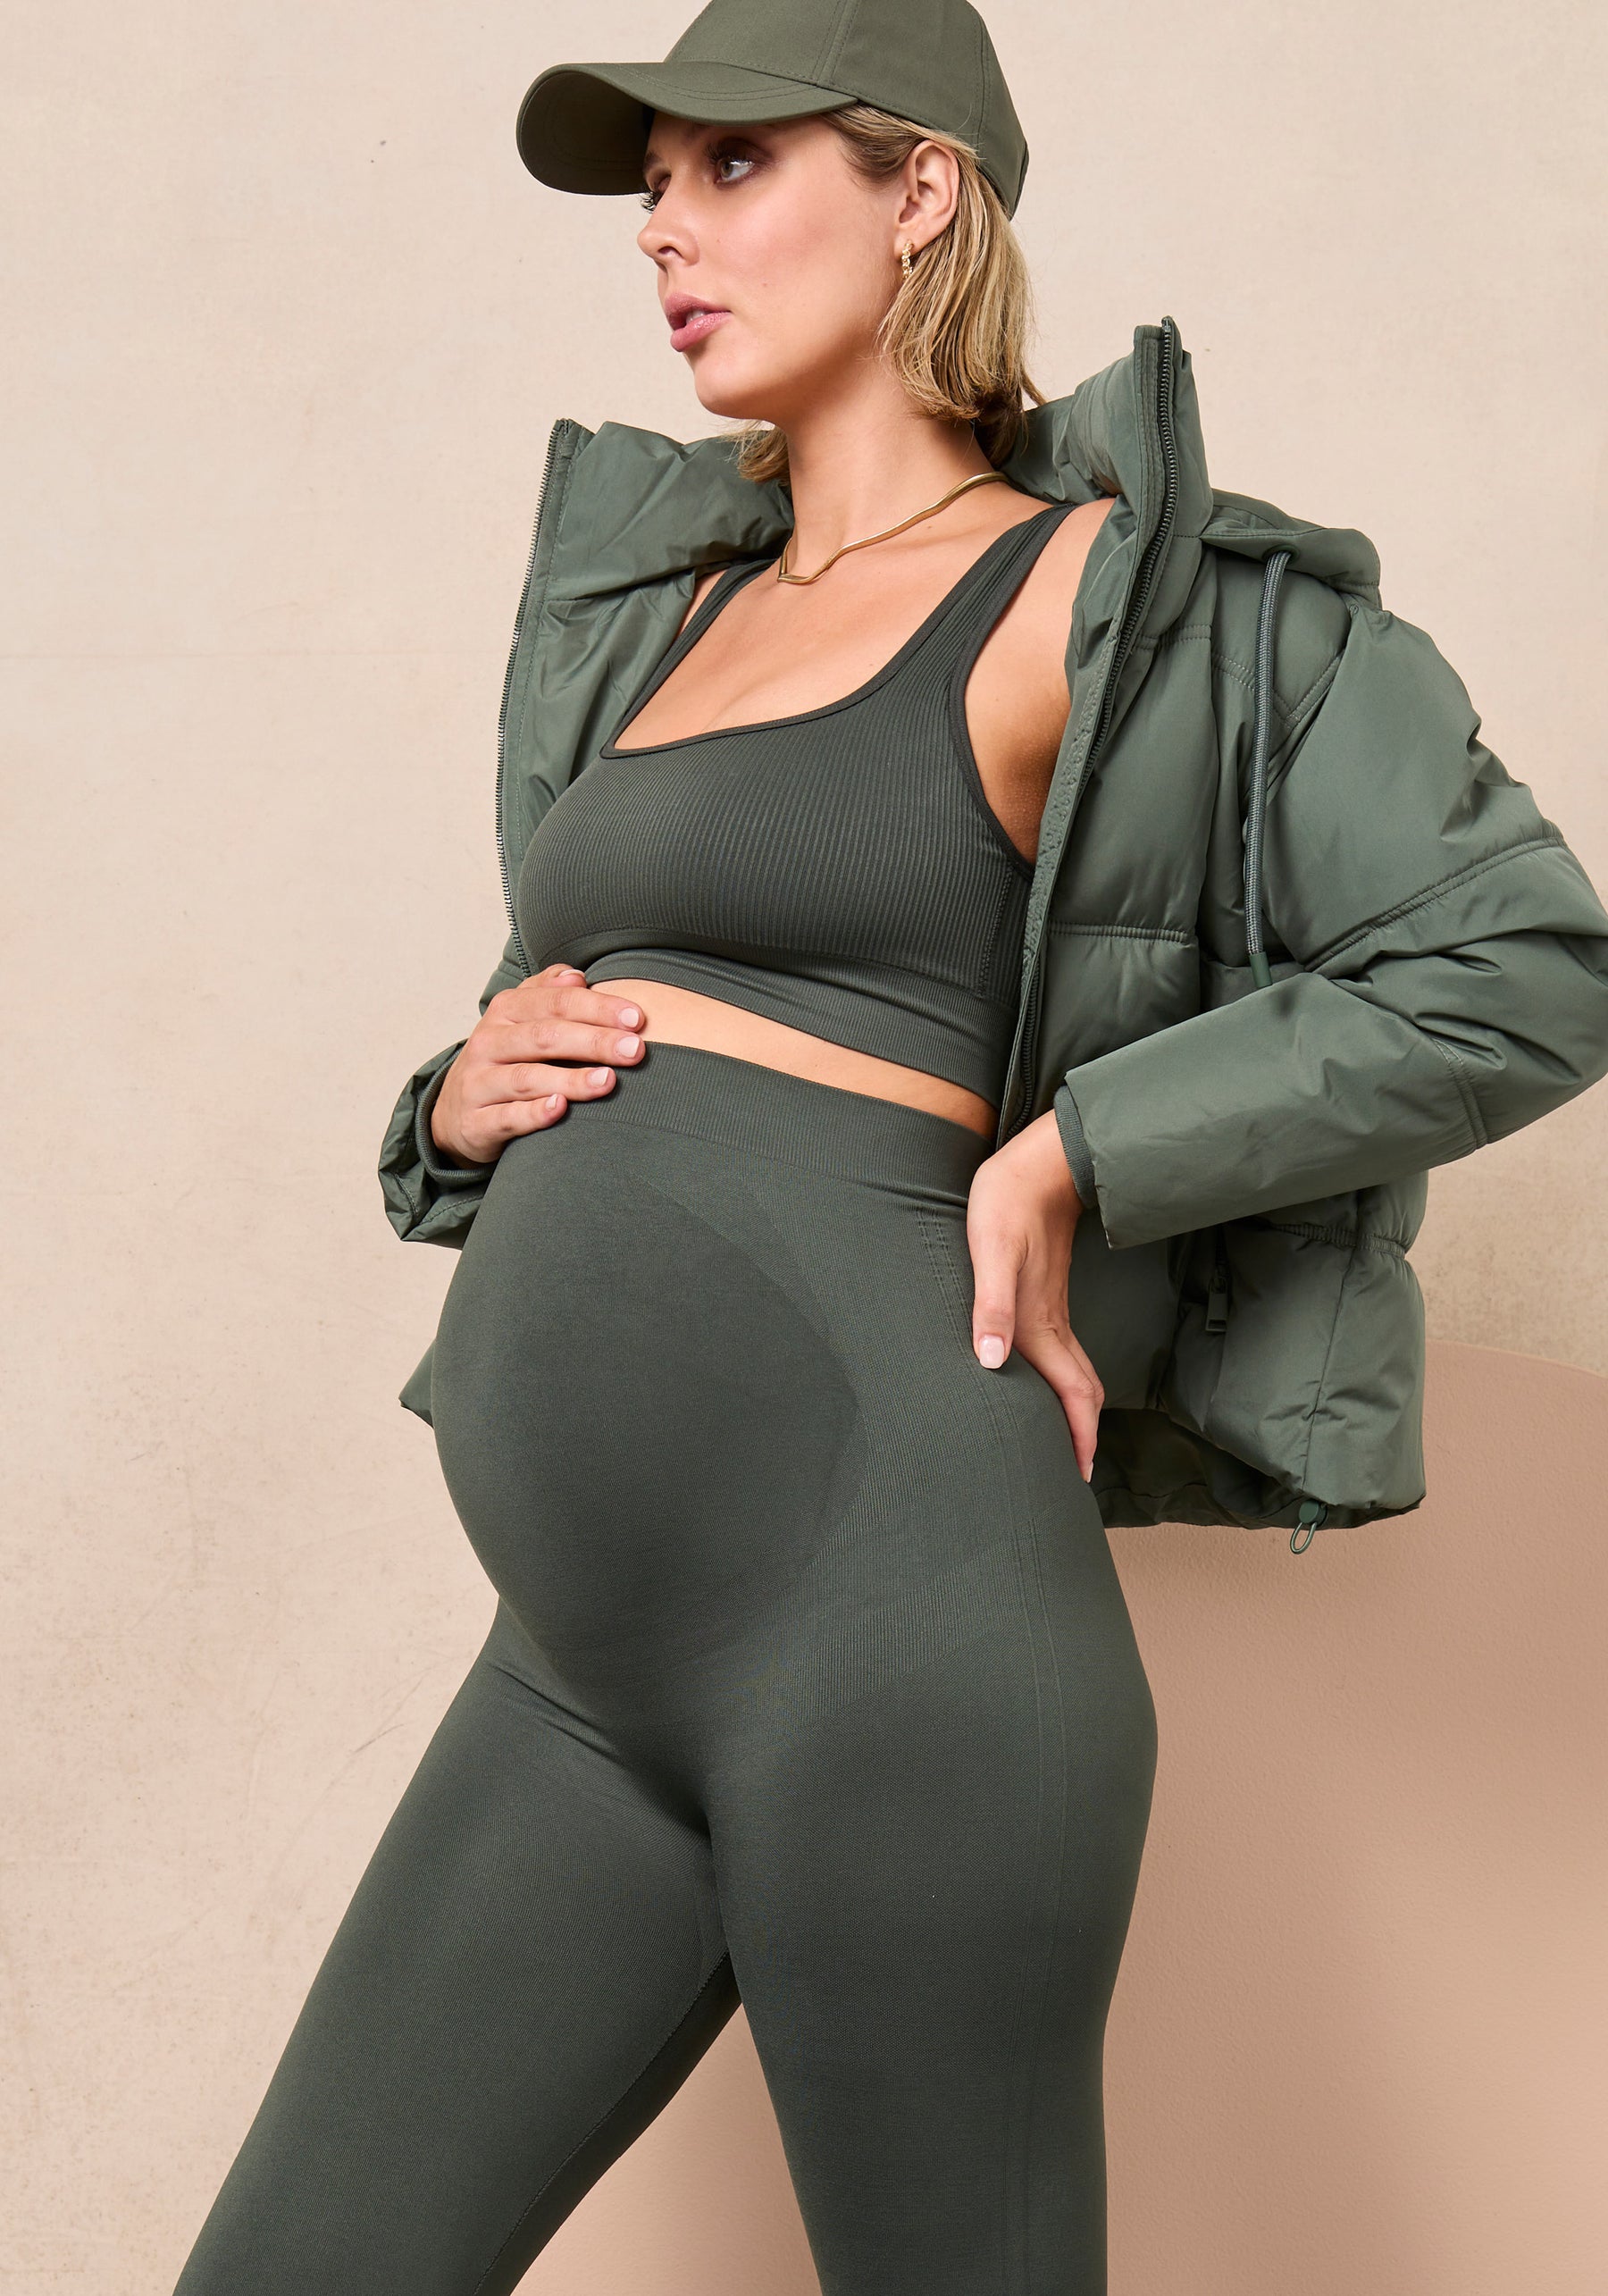 Blanqi Maternity leggings review - October 2020 Babies